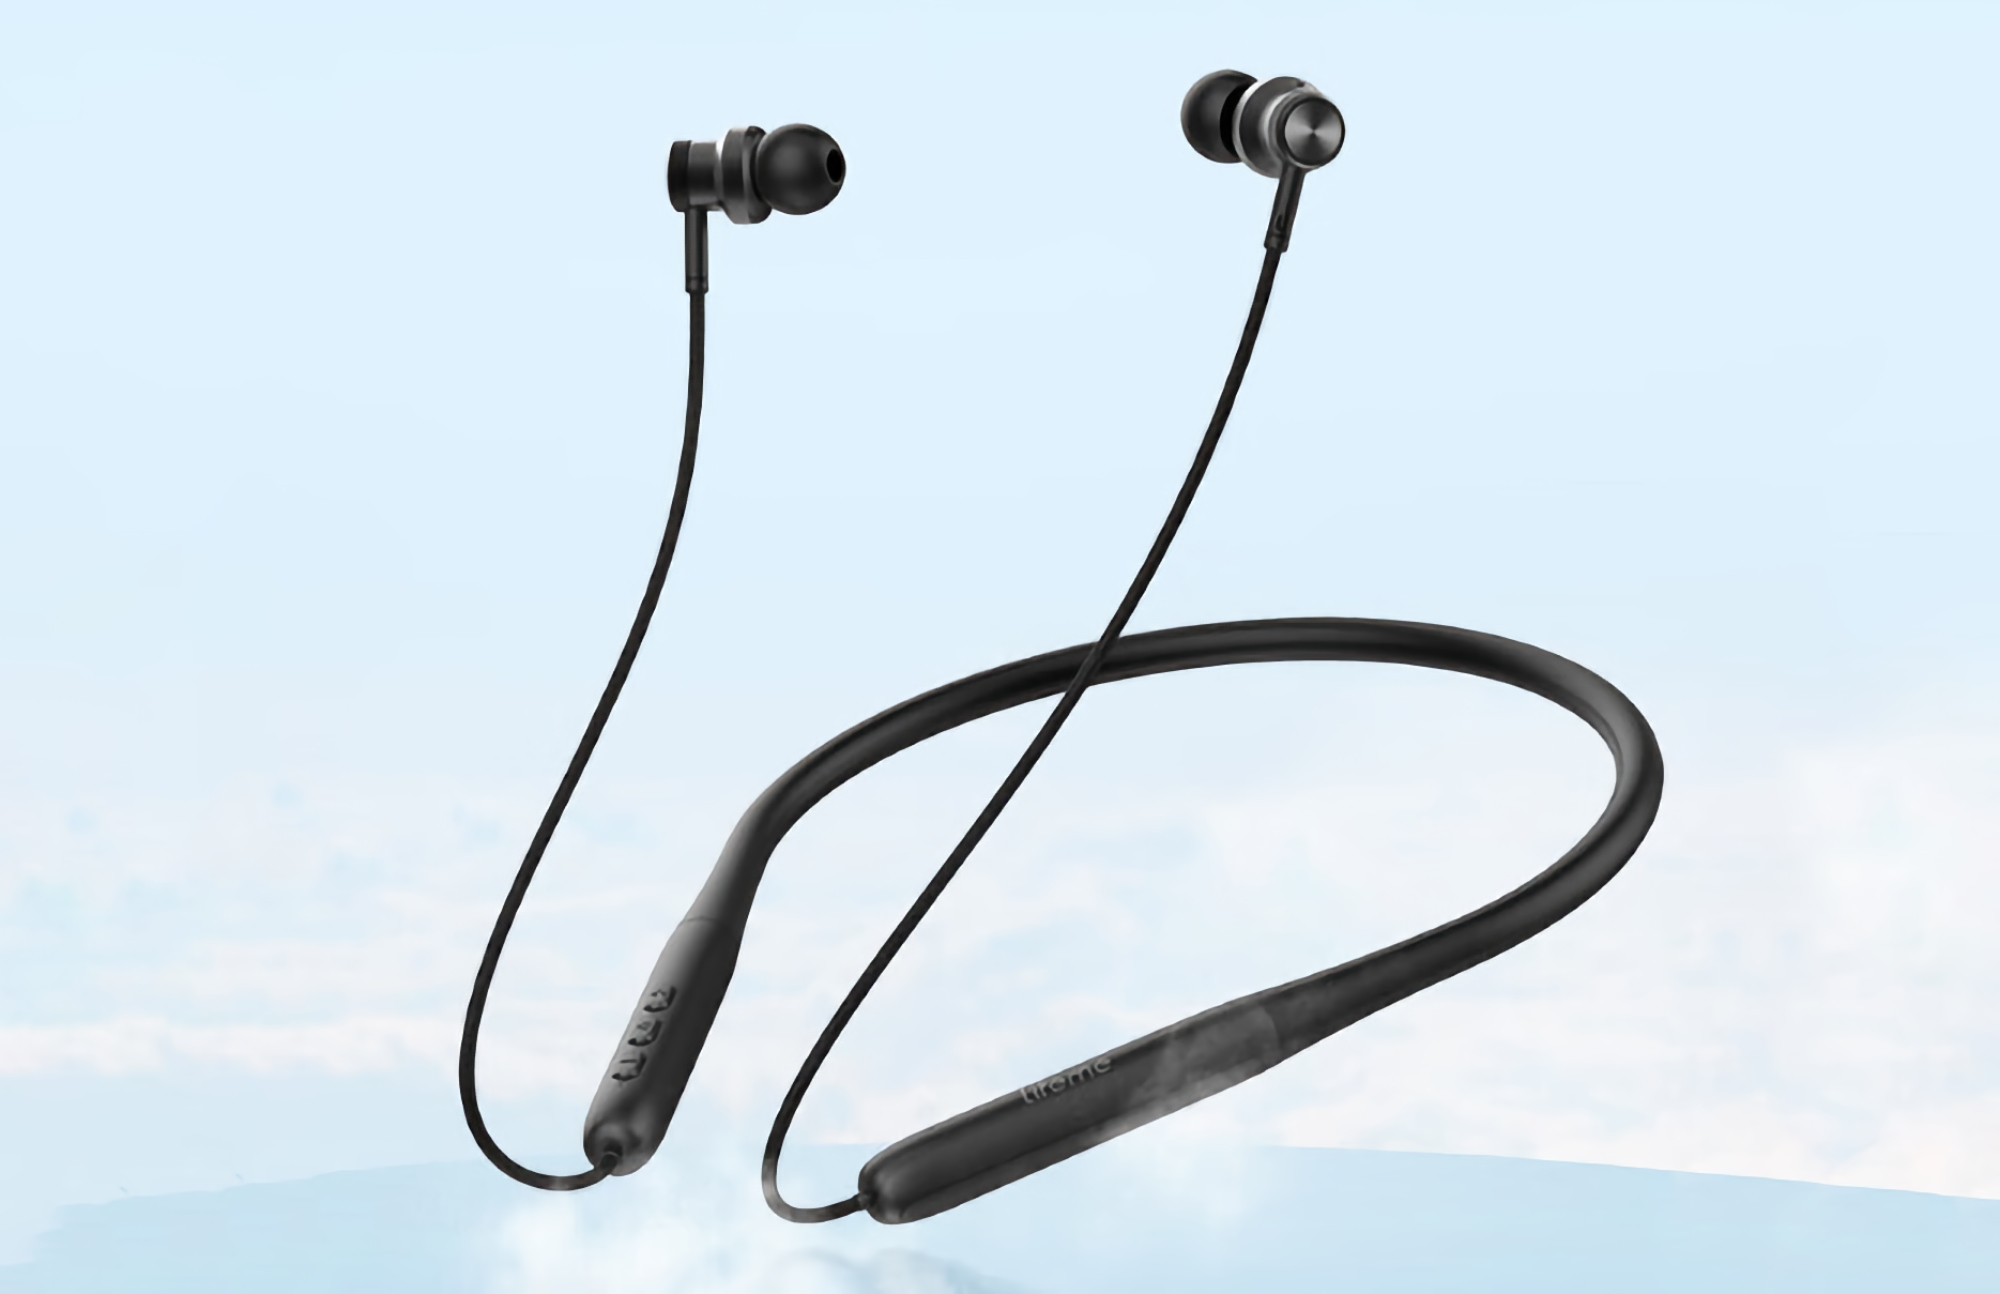 Meizu Lifeme W21 Neckband: bezprzewodowe słuchawki z ENC, ochroną IPX4 i do 22 godzin pracy na baterii za 23$